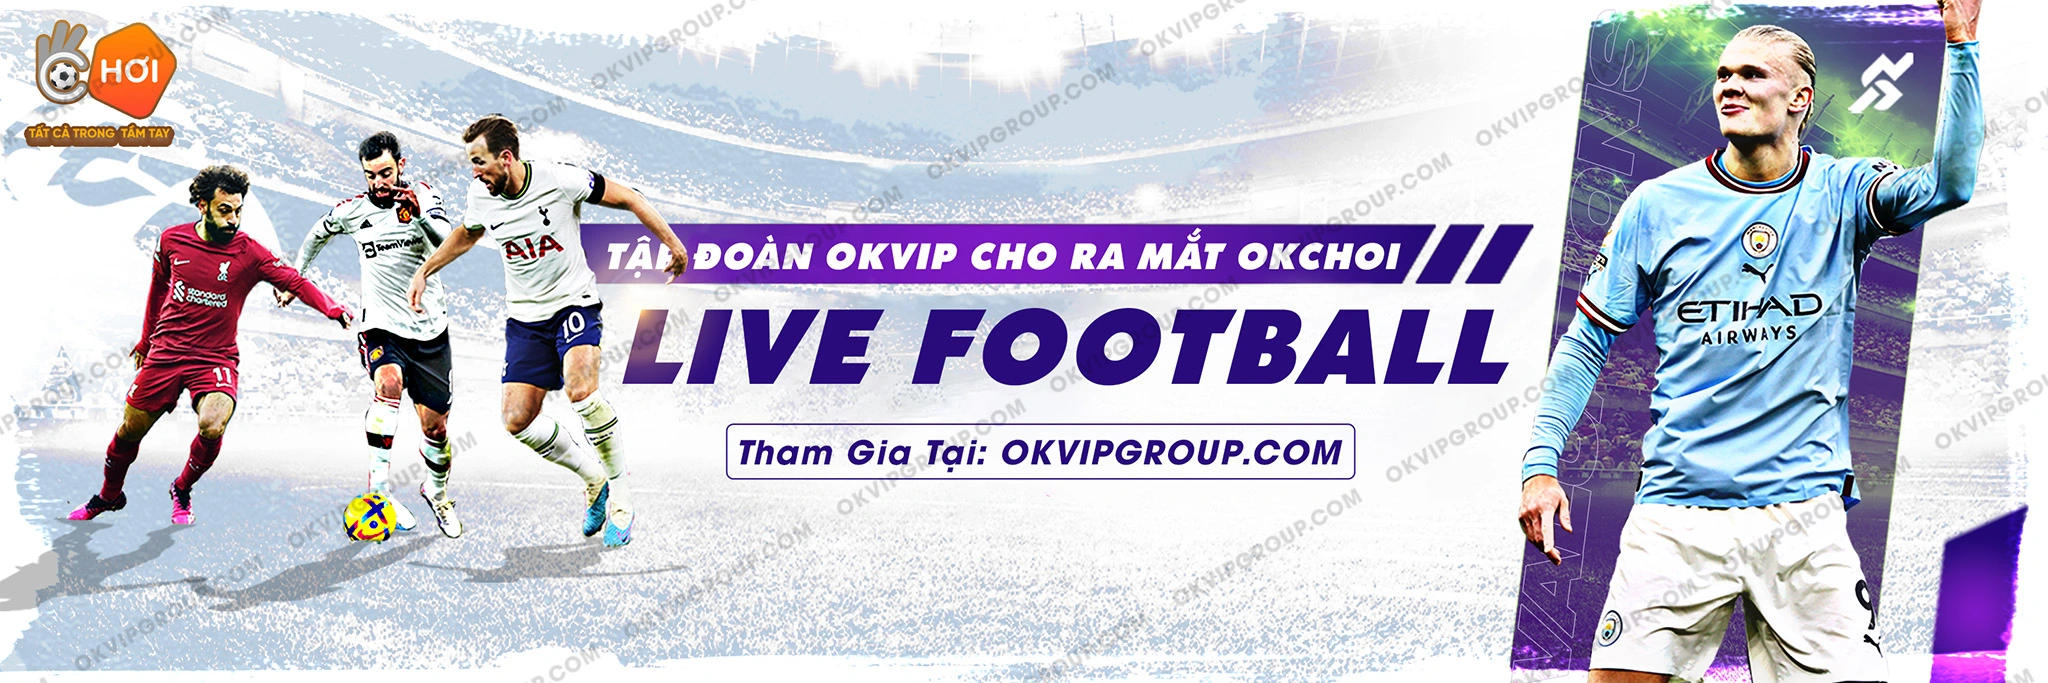 Banner bóng đá Okchoi - thương hiệu thuộc tập đoàn OKVIP Group